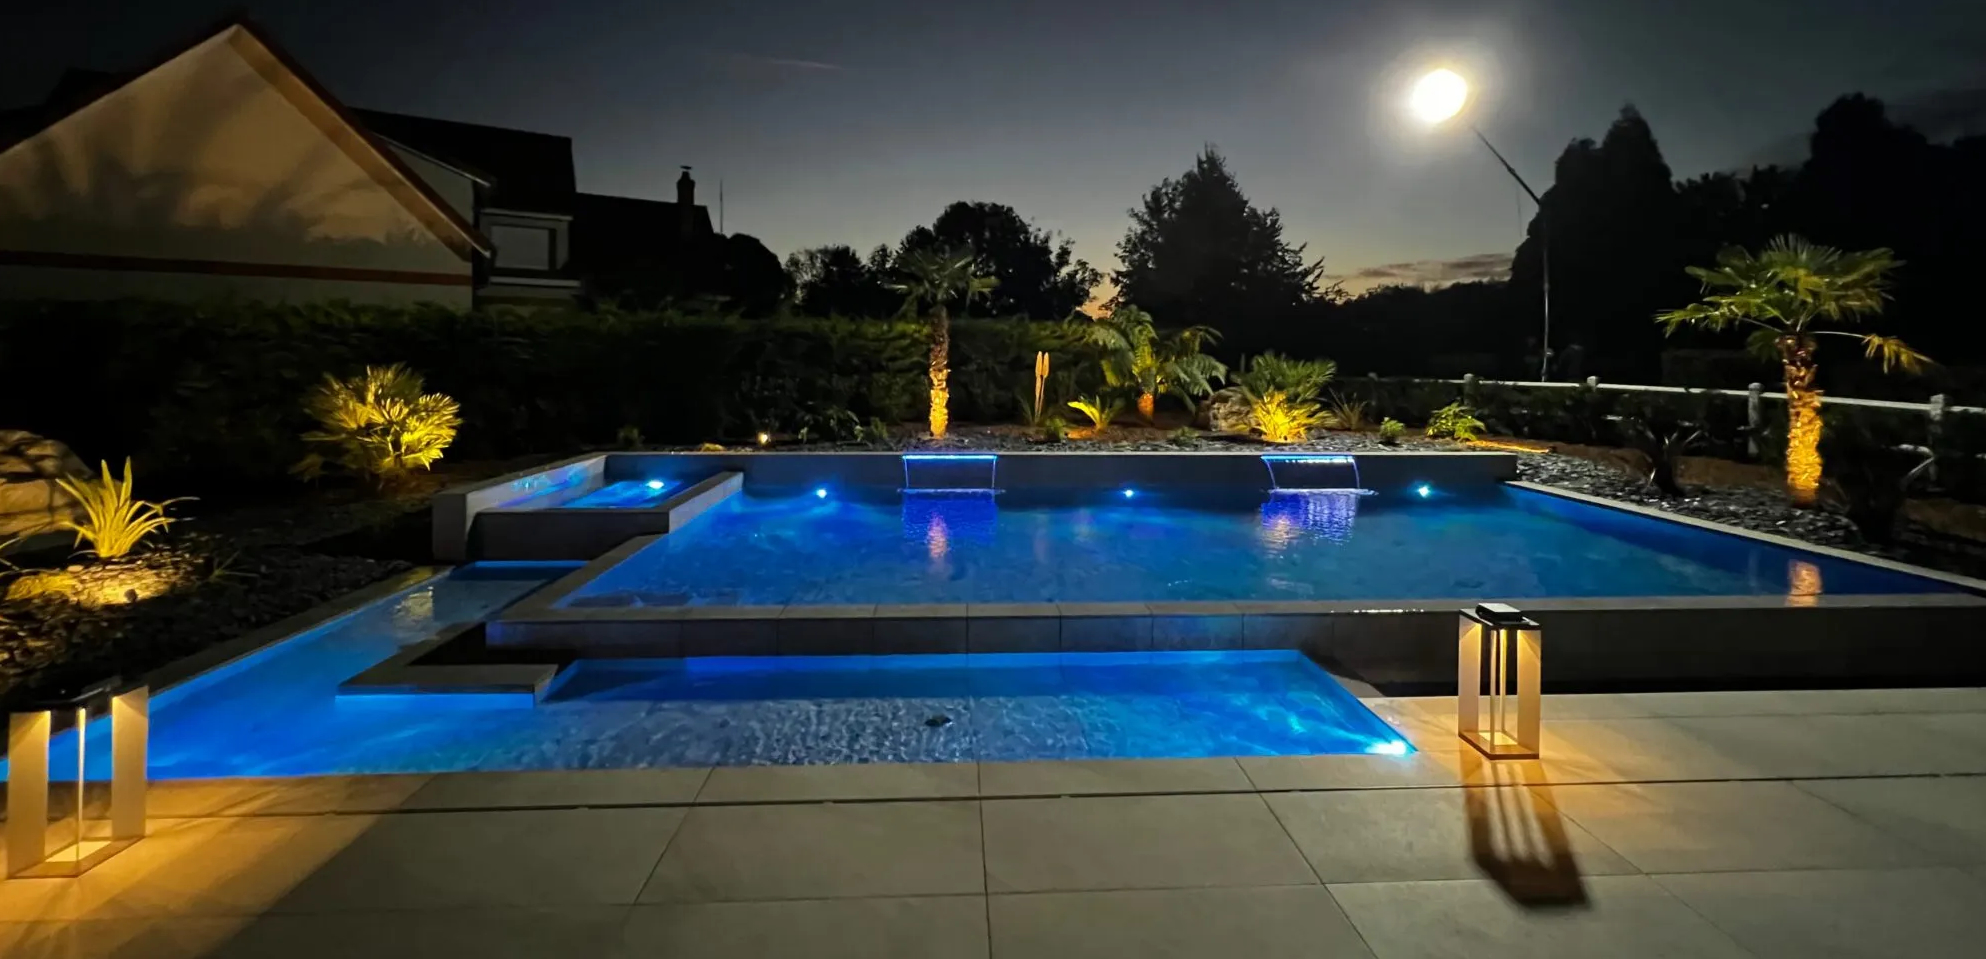 Création d’une piscine de rêve – résidence privée – Marne la Vallée –